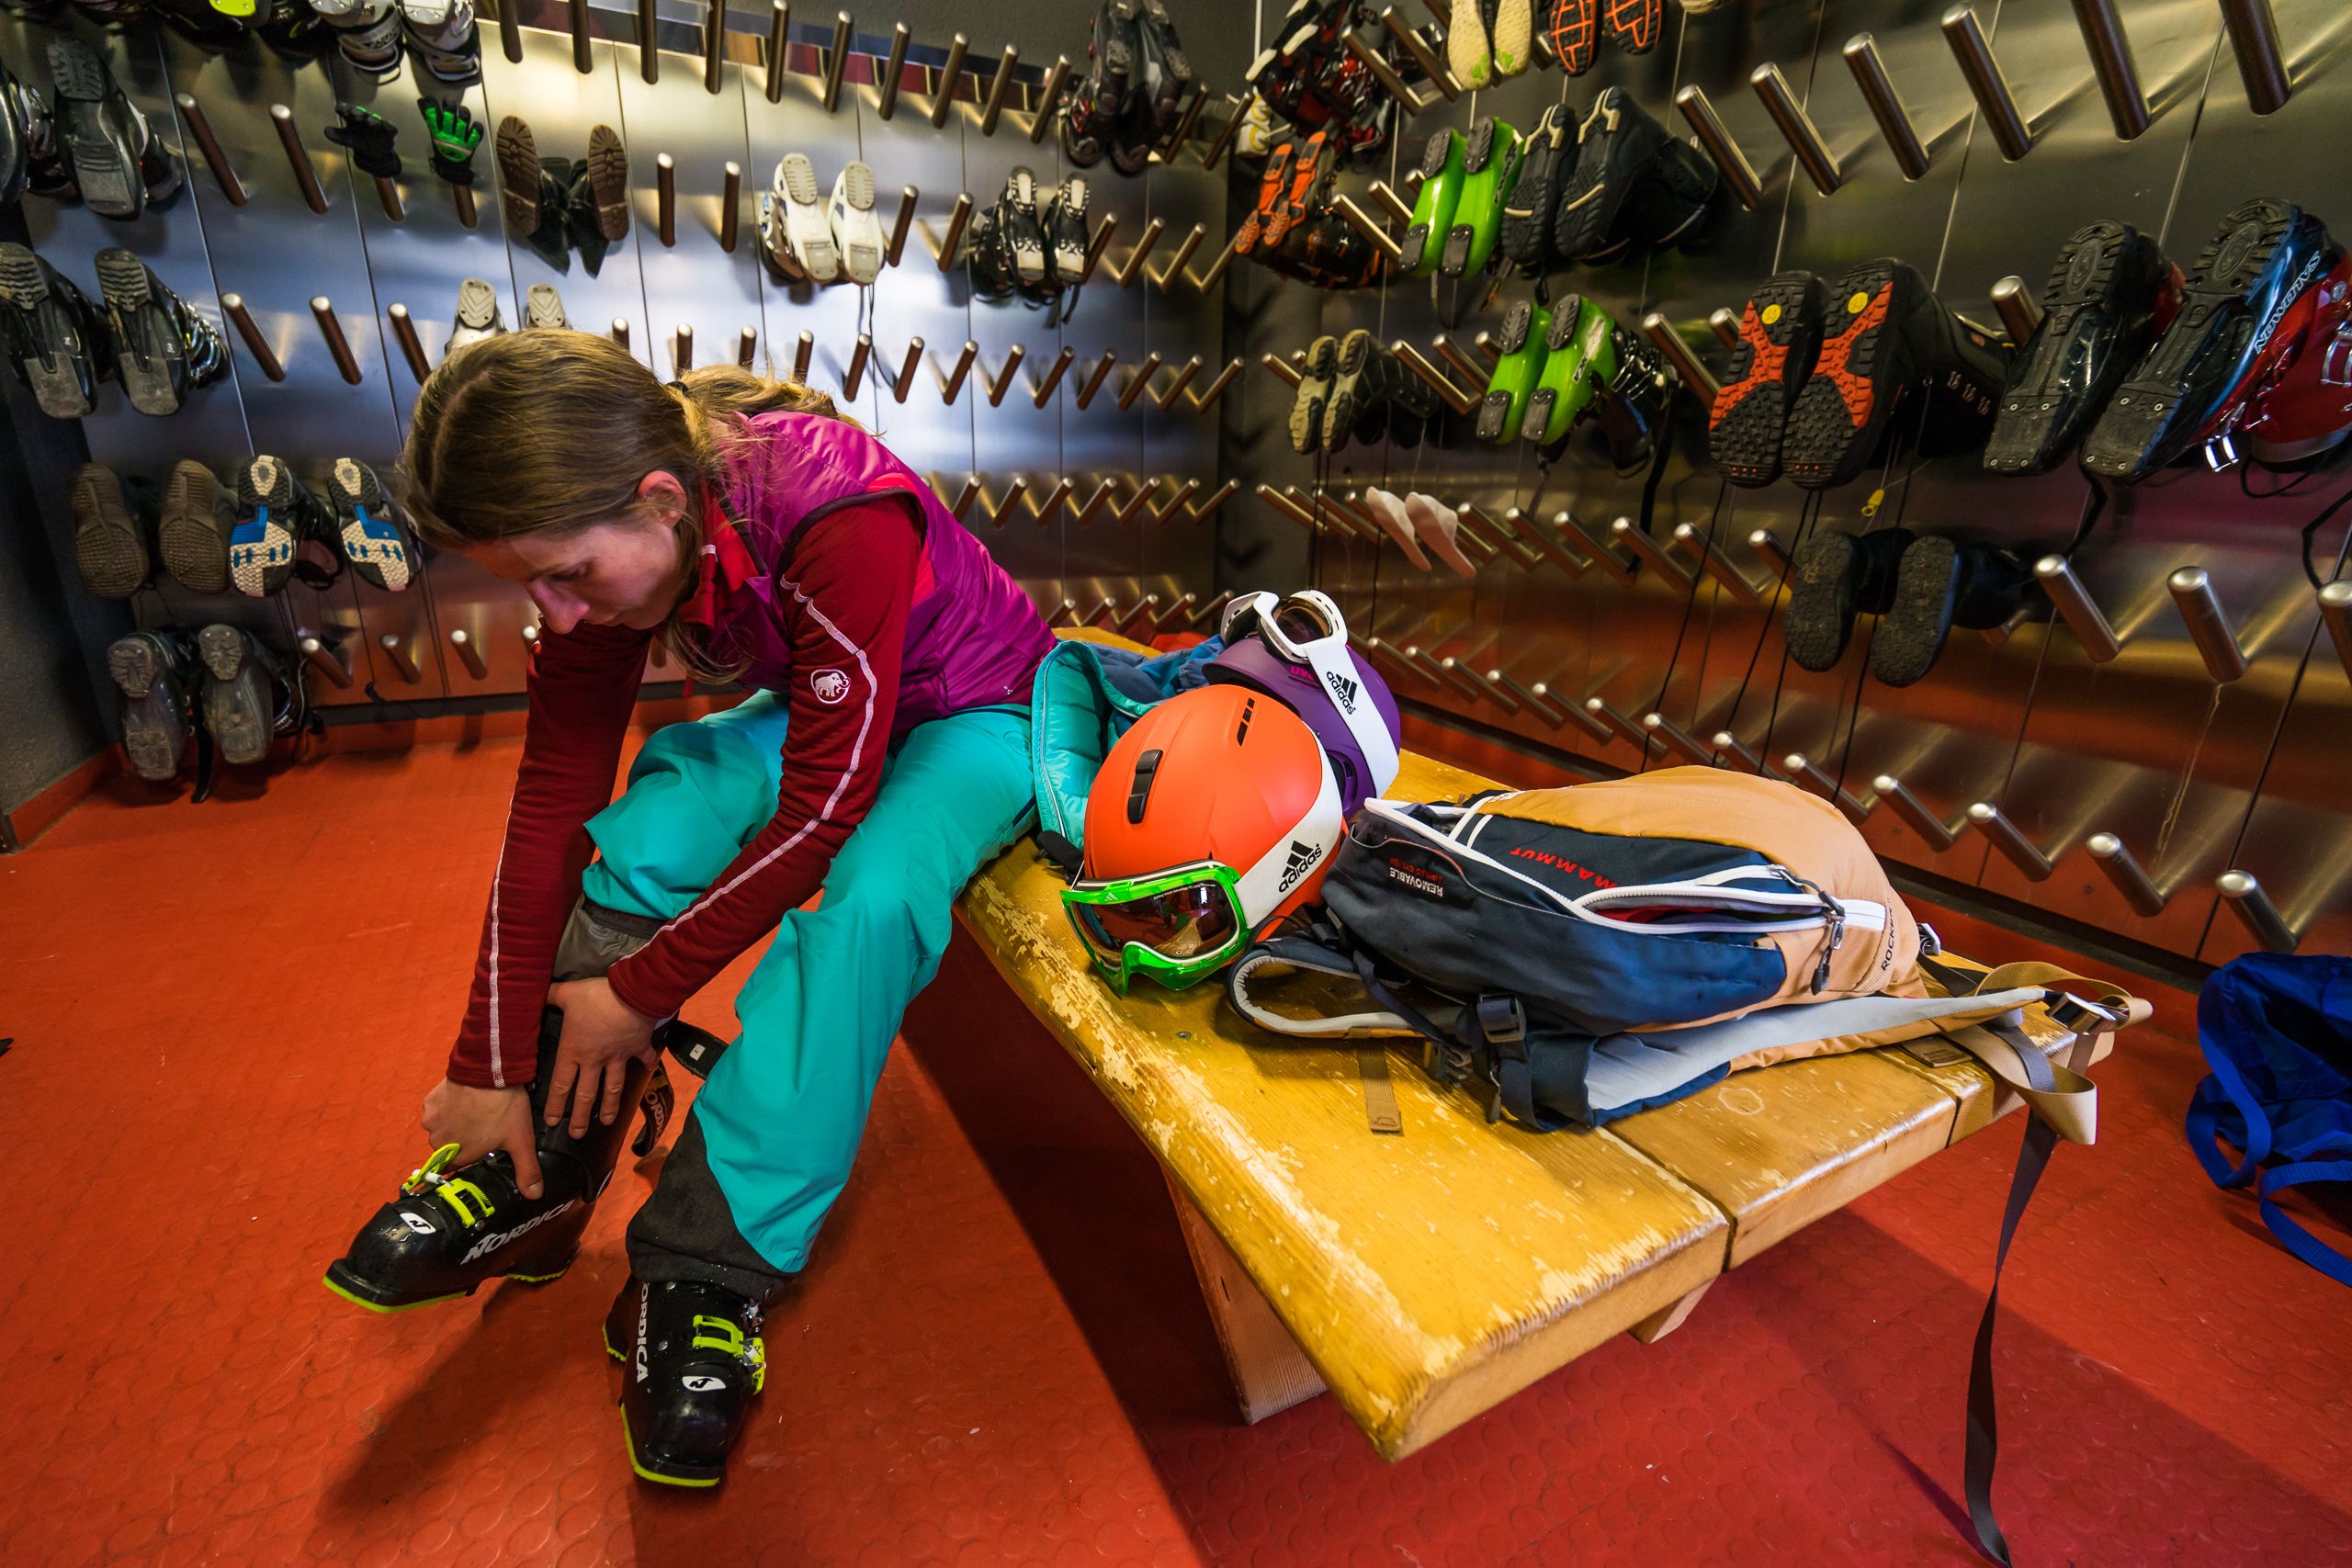 binden stoomboot Renaissance Tips bij het kopen van skischoenen - Wintersport weblog